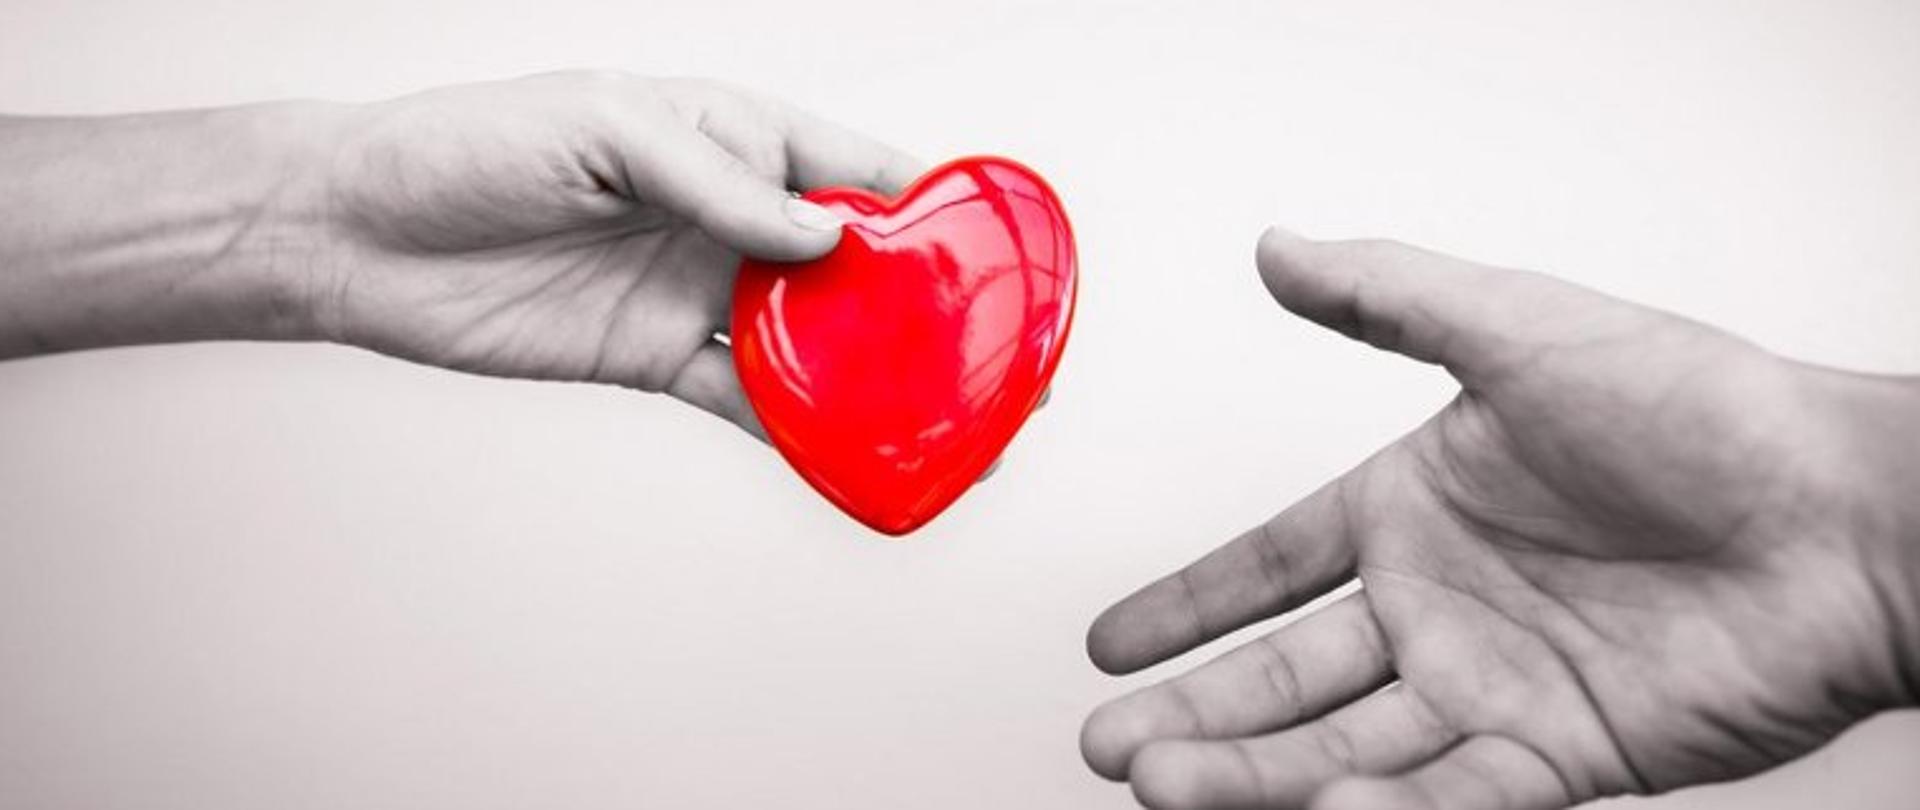 Dwie ręce podają sobie czerwony przedmiot w kształcie serca.